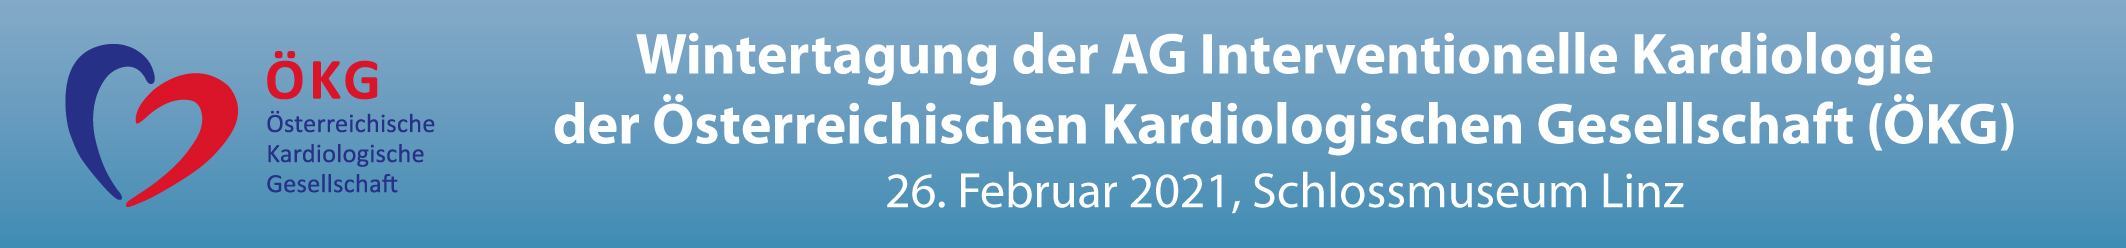 Wintertagung der AG Interventionelle Kardiologie der ÖKG